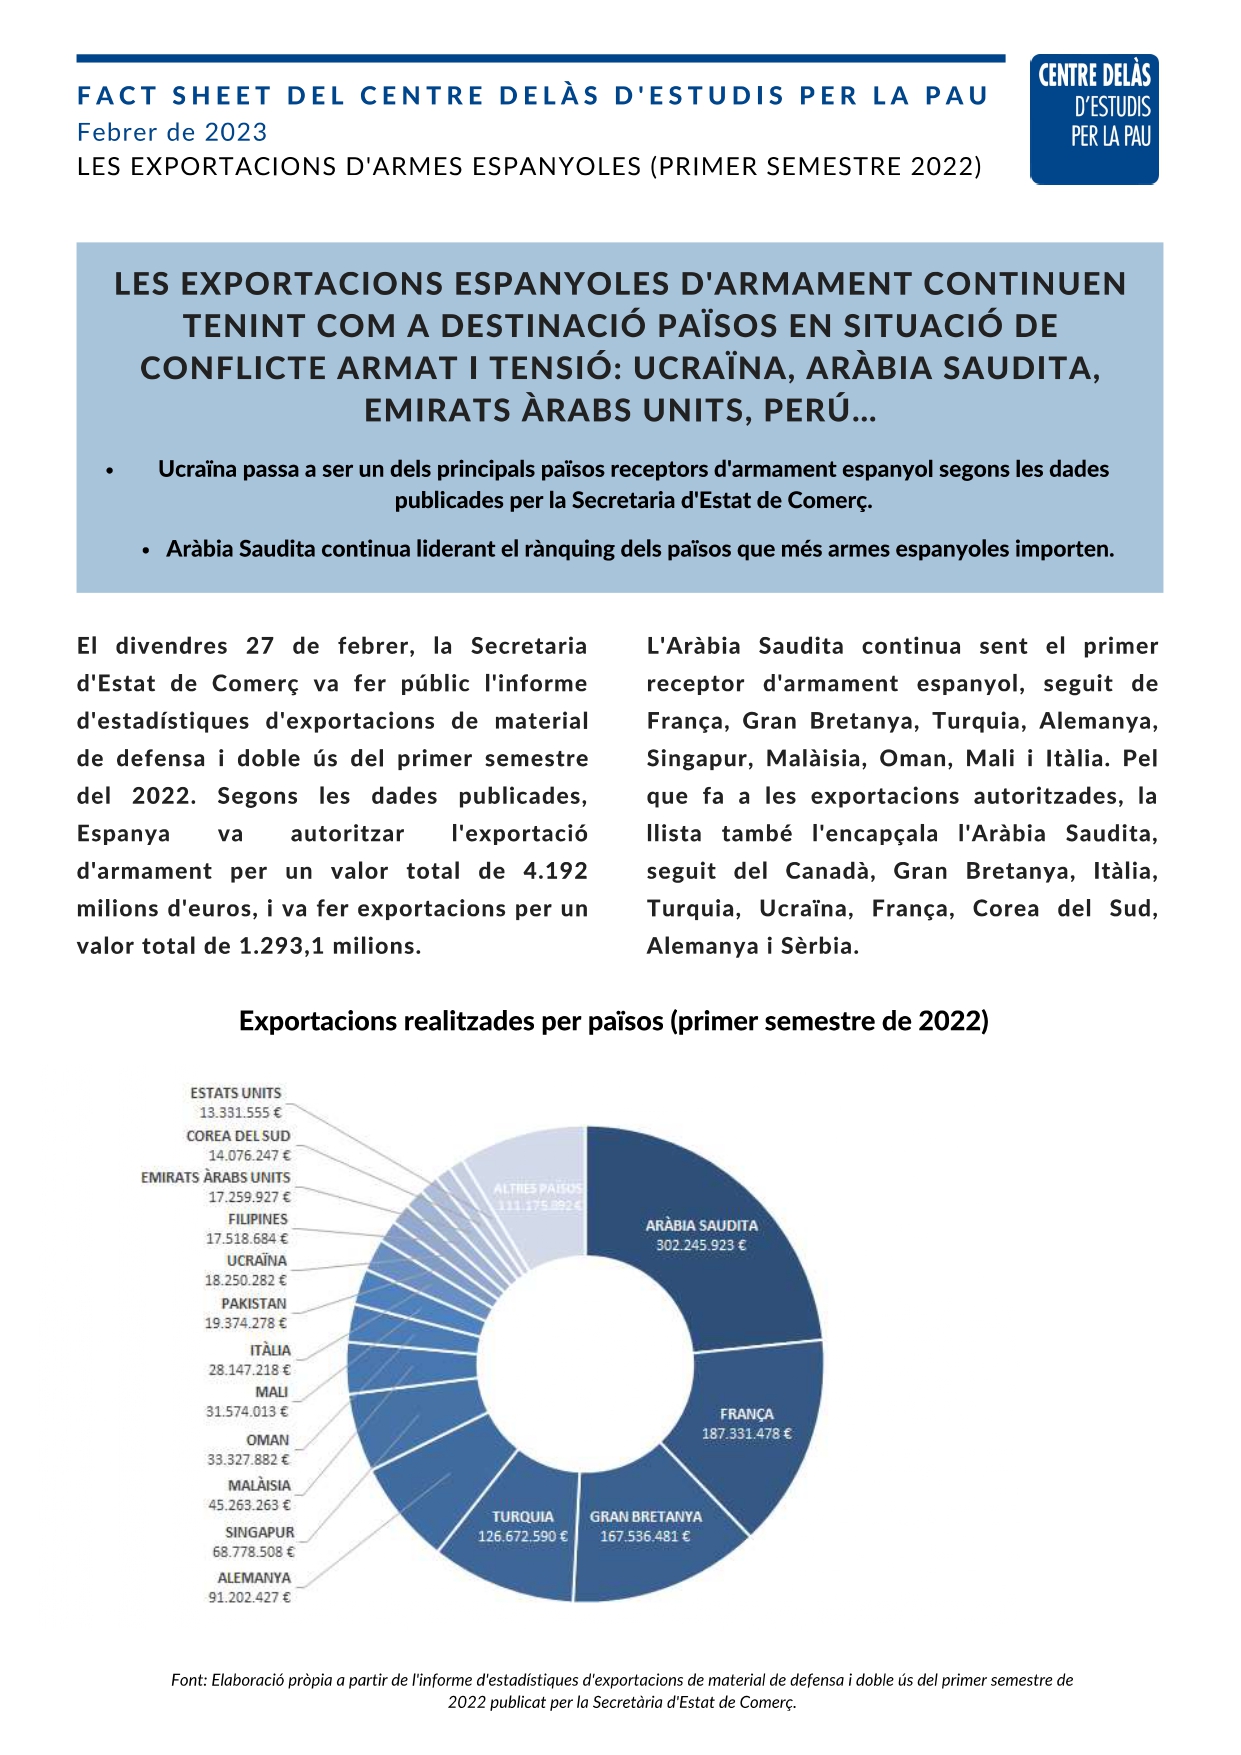 Fact Sheet del Centre Delàs: “Les exportacions espanyoles d’armament continuen tenint com a destinació països en situació de conflicte armat i tensió: Ucraïna, Aràbia Saudita, Emirats Àrabs Units, Perú…”